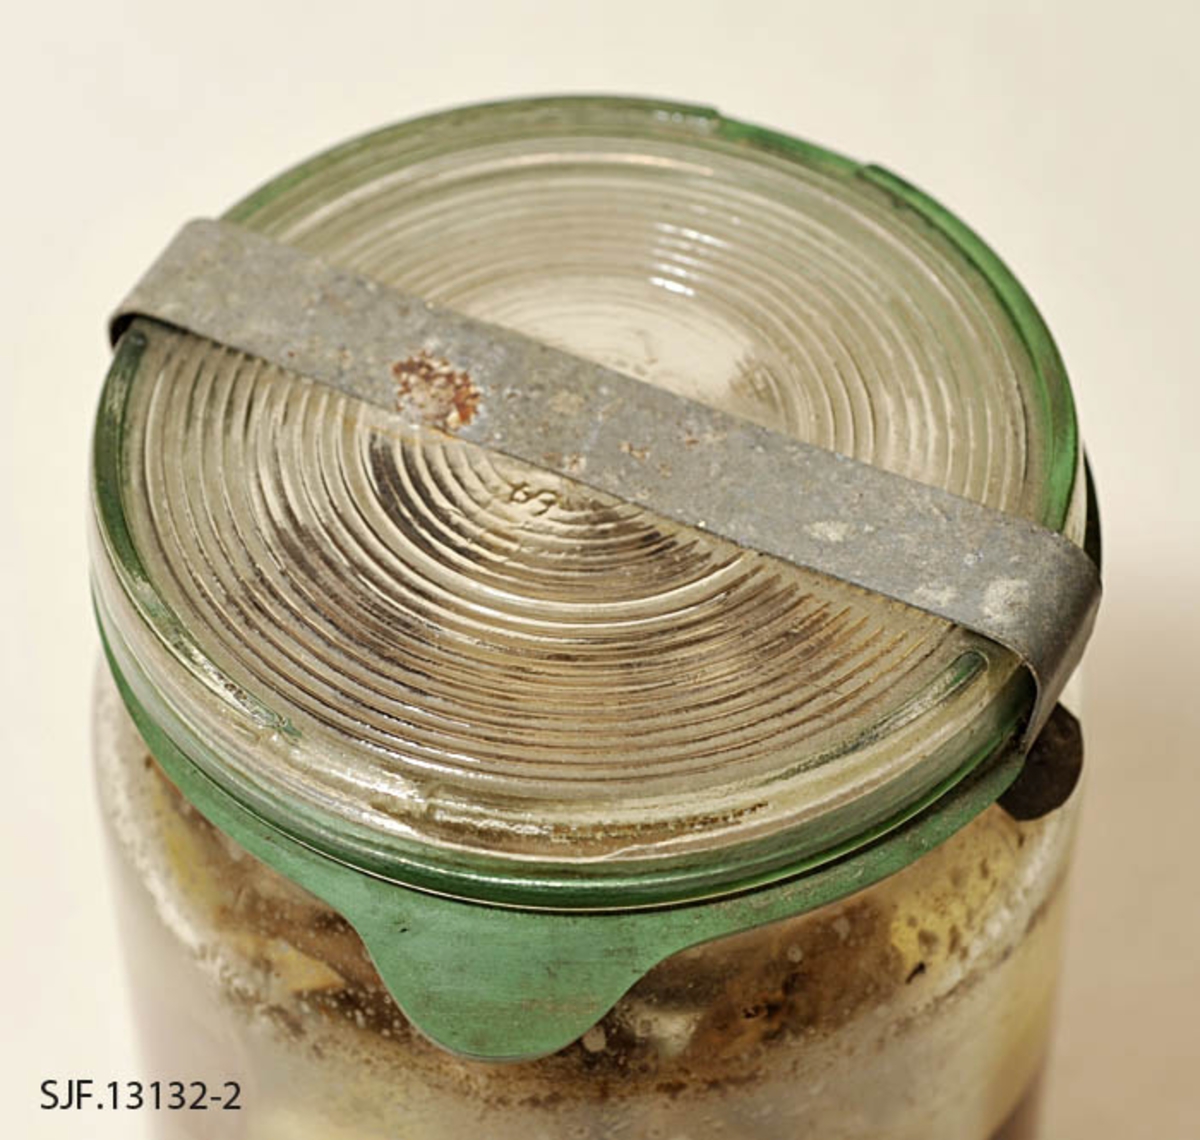 Tiur på hermetiseringsglass, som ble tilbredt i 1958. Glasset består av fire deler: Klar glasskrukke med glasslokket.  Det er en grønn syltestrikk under glasslokk. Dette kan festes med en klemme av metallbit som er flat og avlang. Formen på gjenstanden er sylindrisk. 